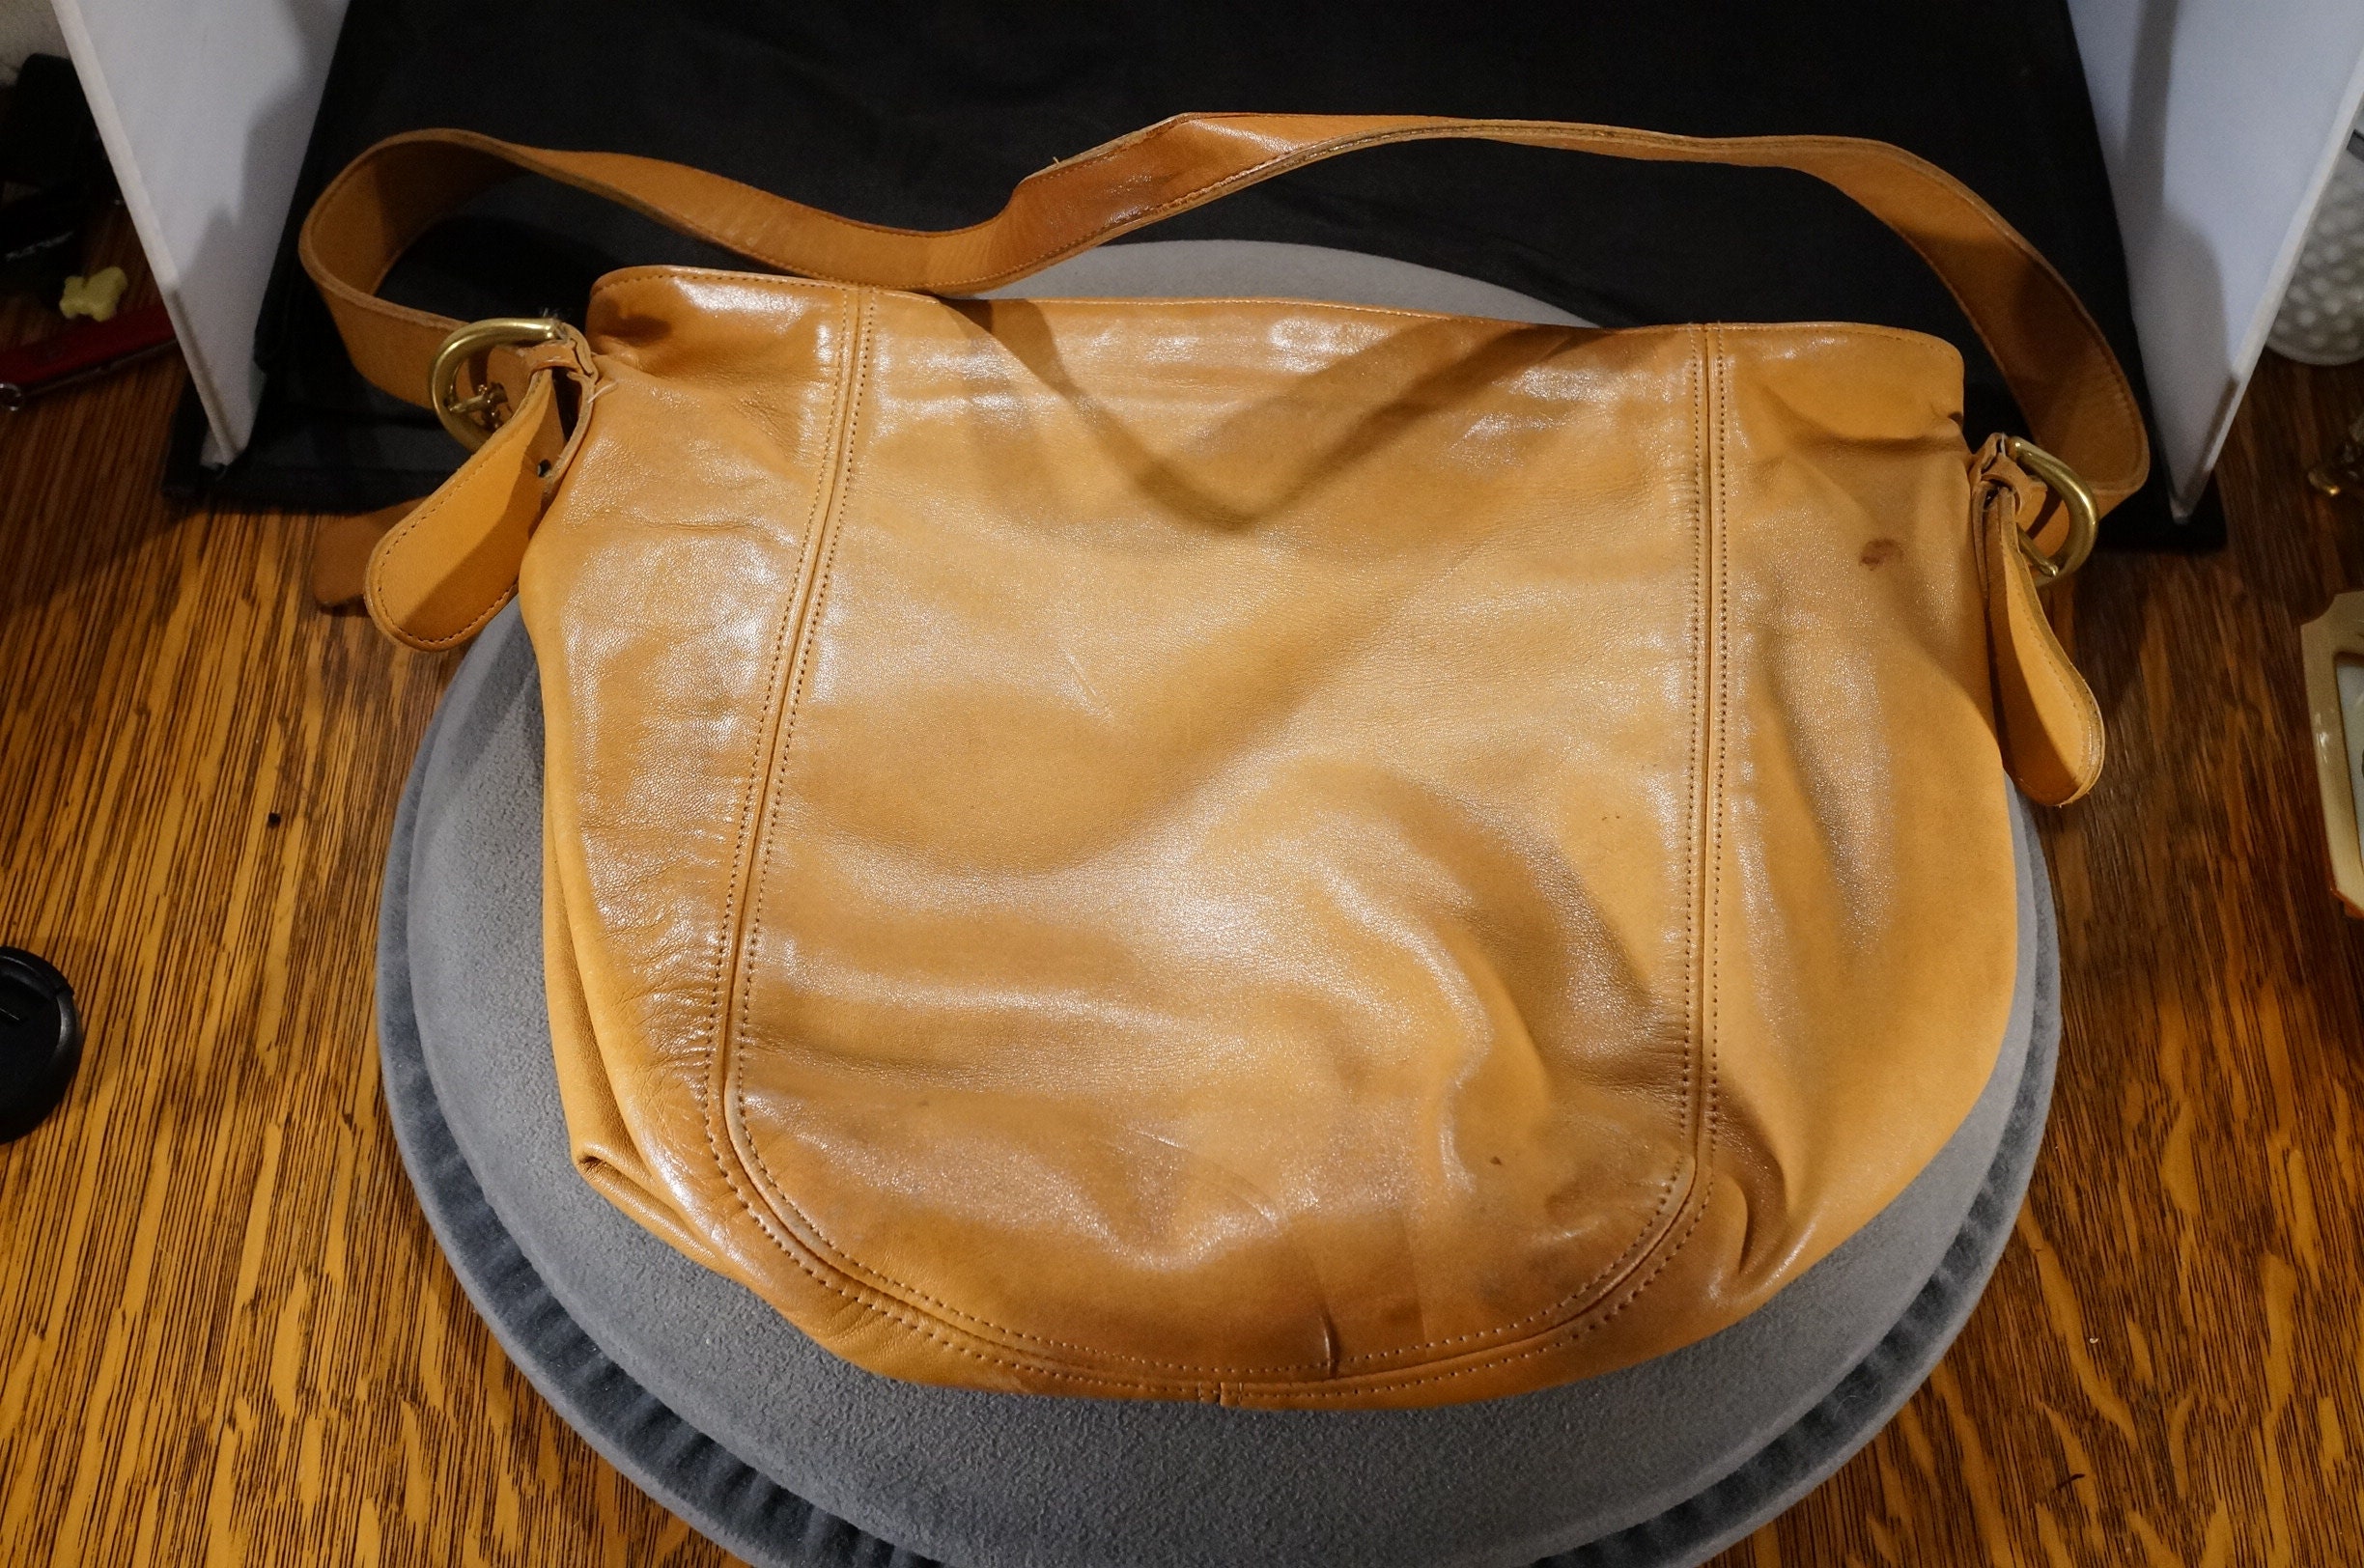 Authentic coach brown shoulder bag